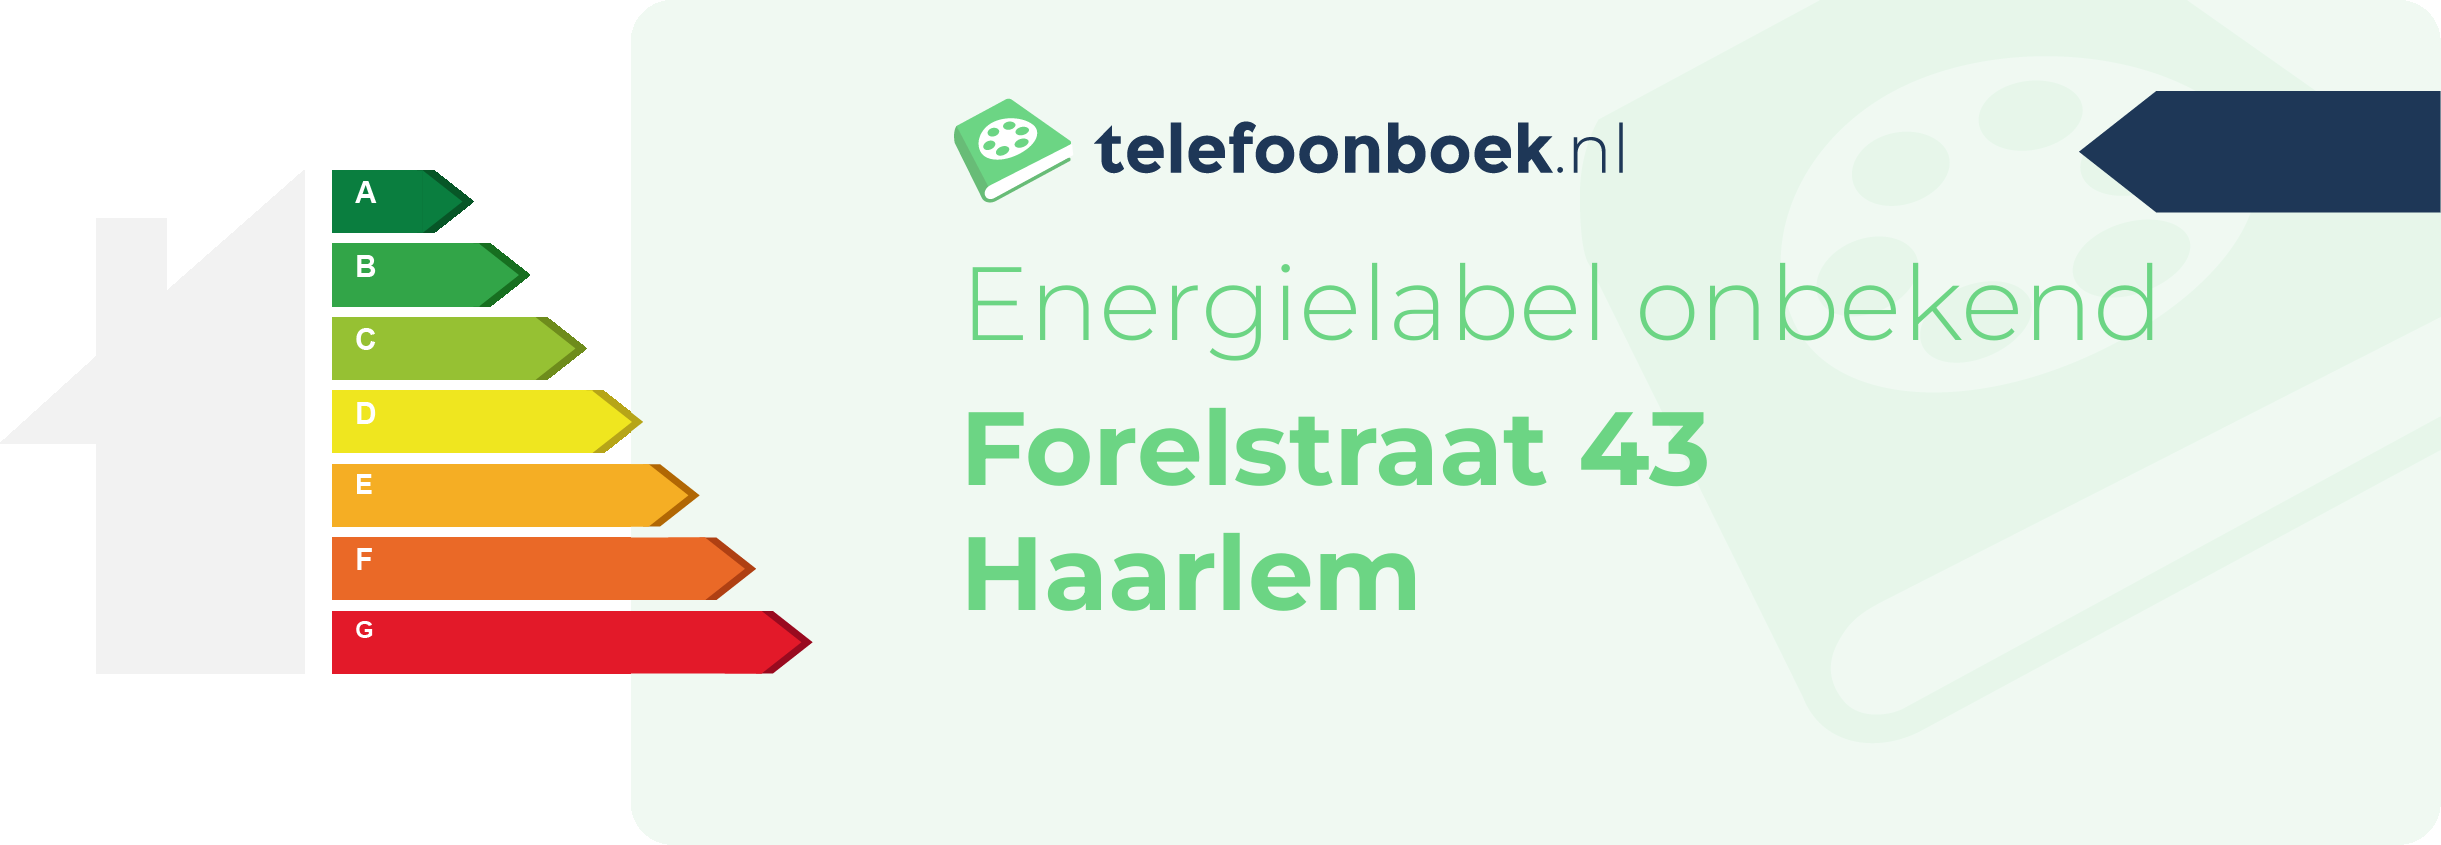 Energielabel Forelstraat 43 Haarlem